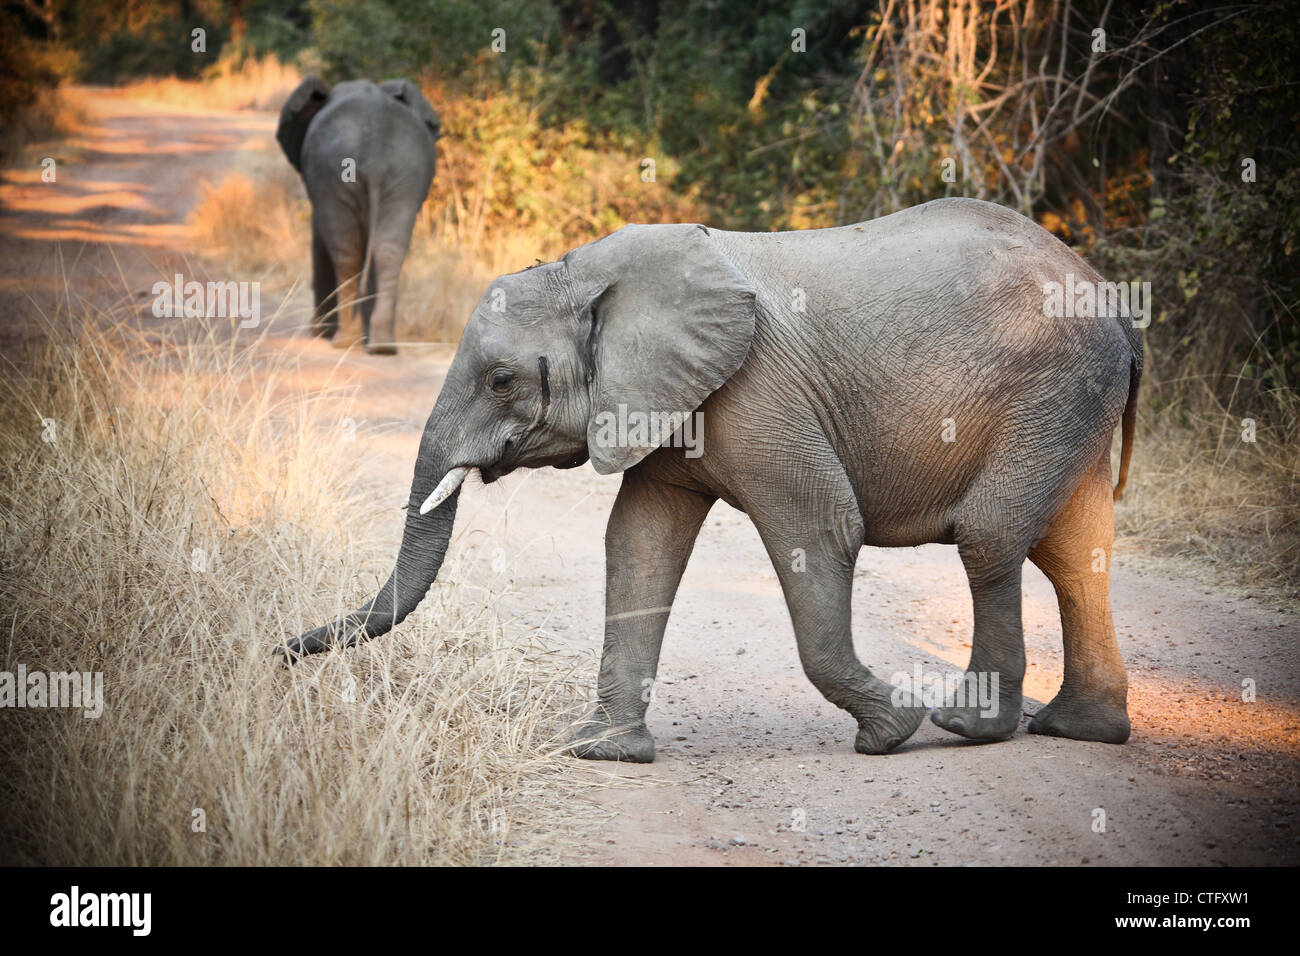 wild elephants in luangwa national park zambia Stock Photo